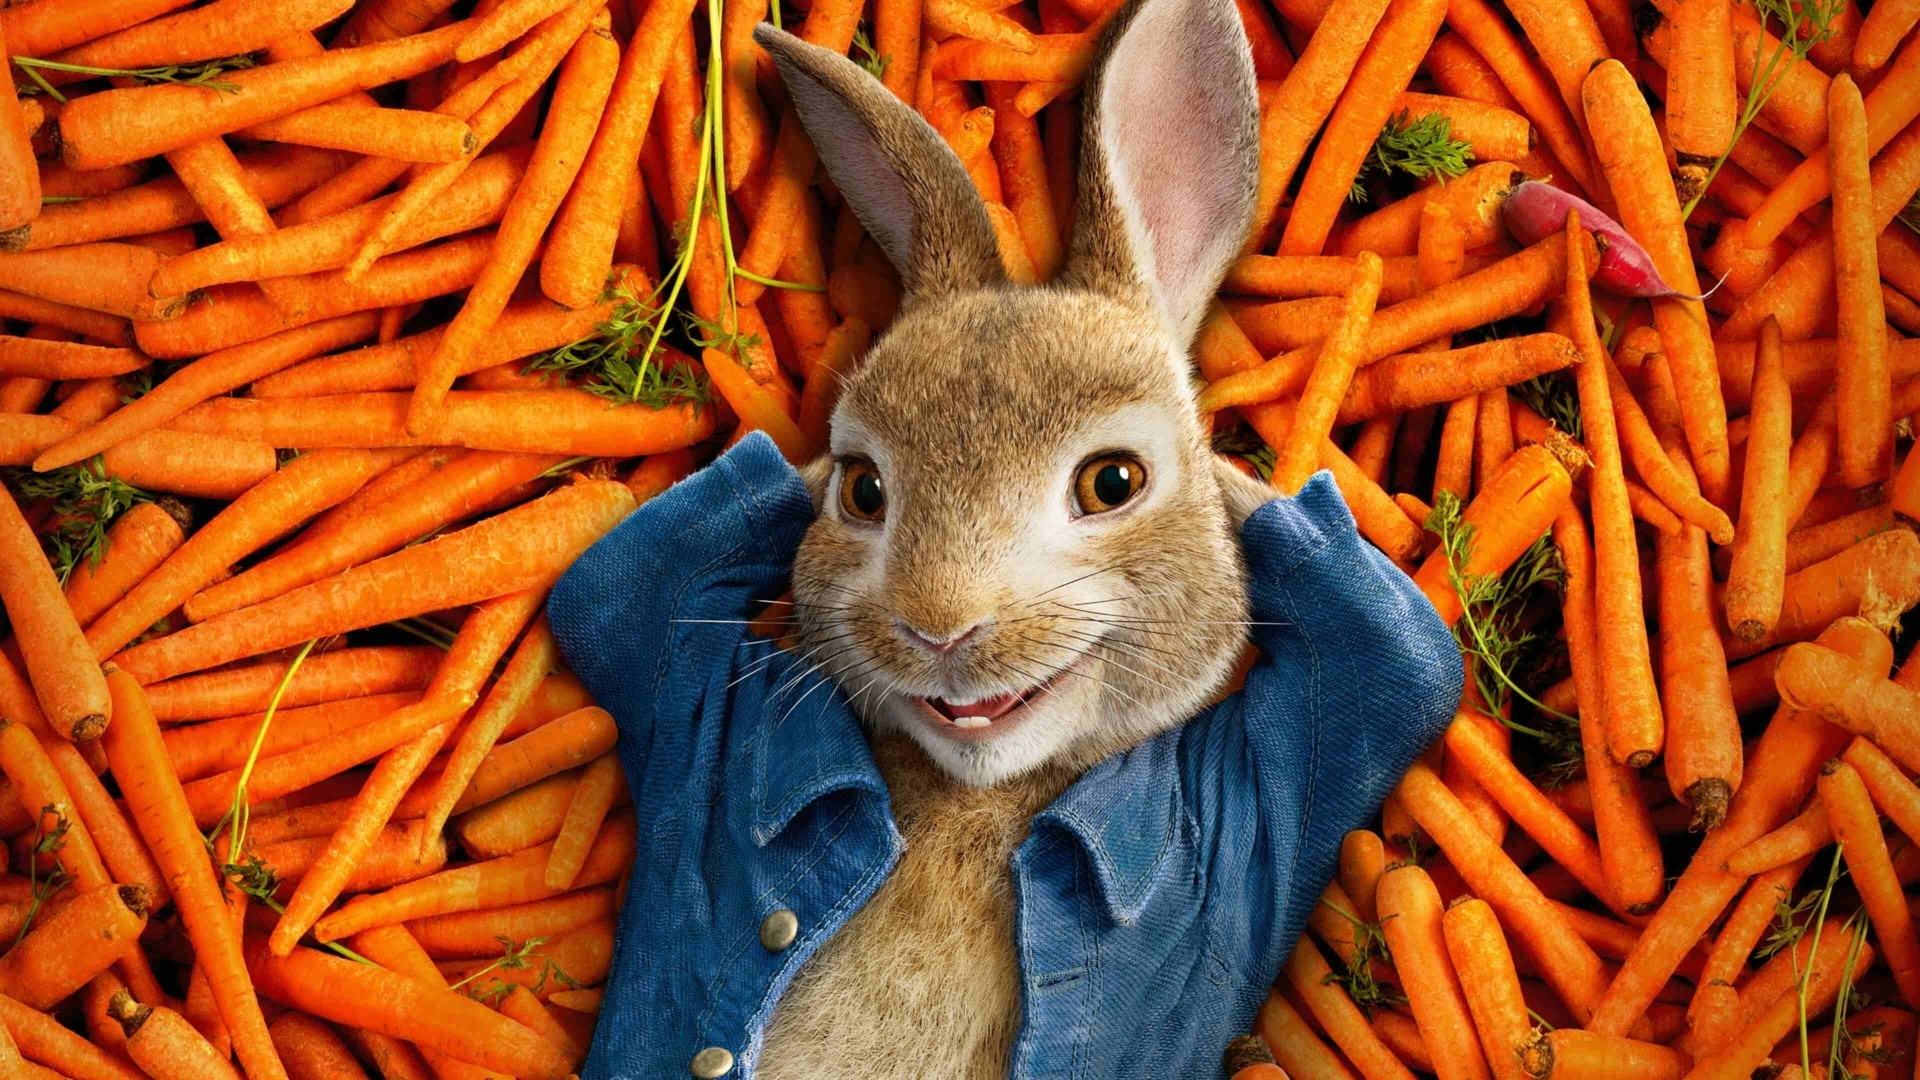 Peter Rabbit (Peter Rabbit)